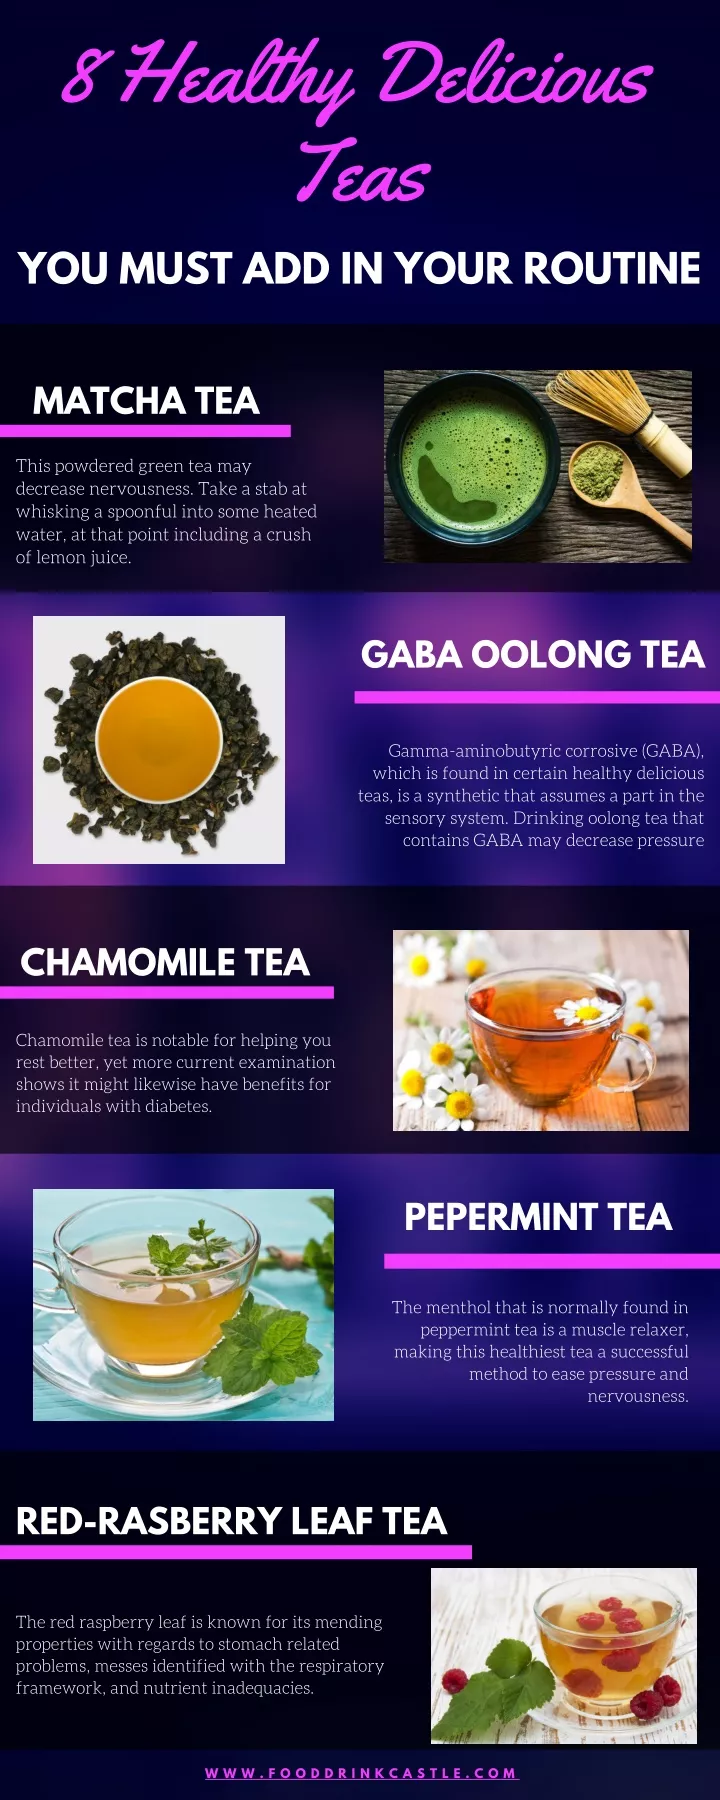 8 healthy delicious teas